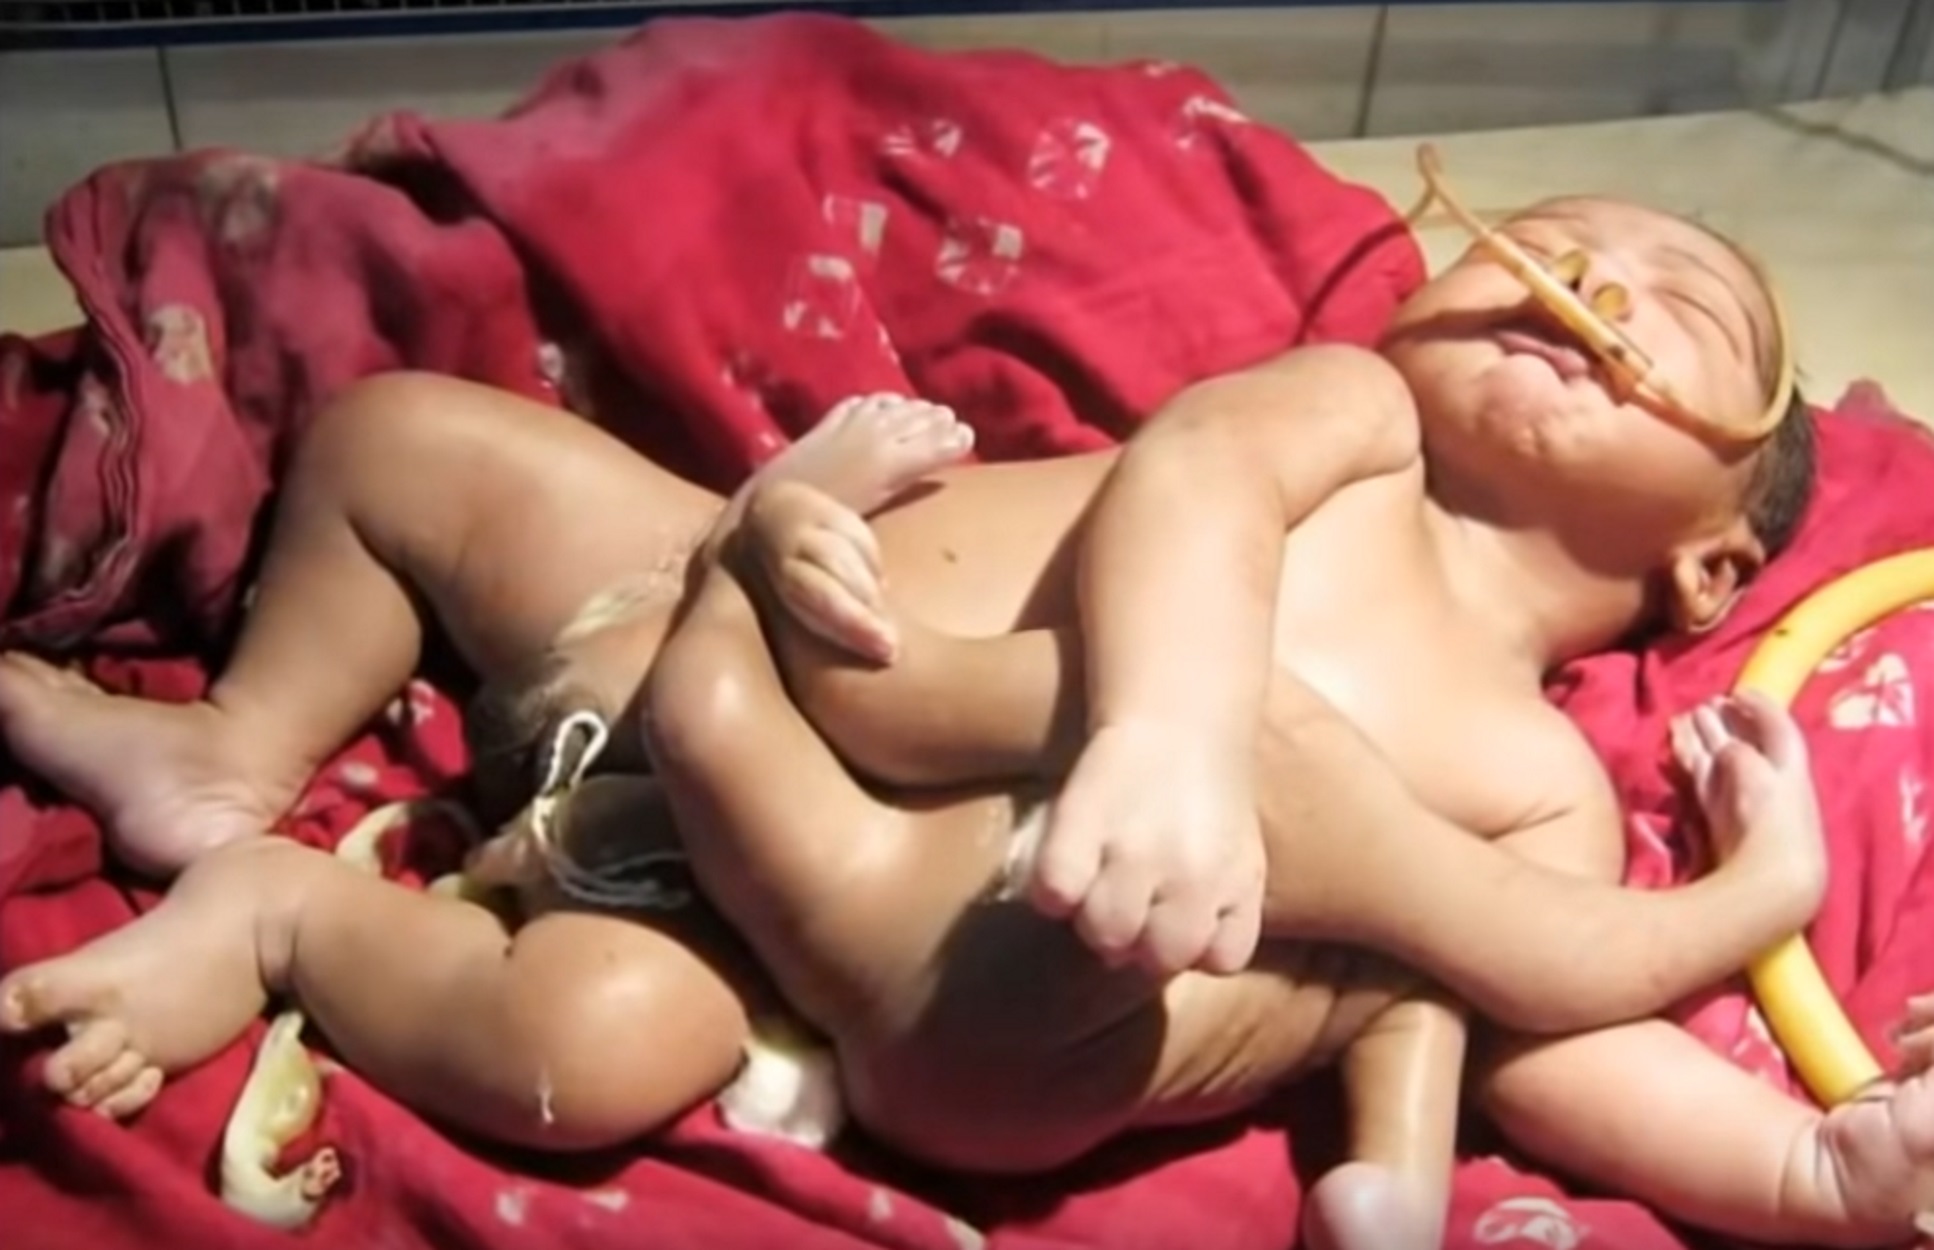 Ινδία: Κοριτσάκι γεννήθηκε με 4 πόδια και 3 χέρια! video